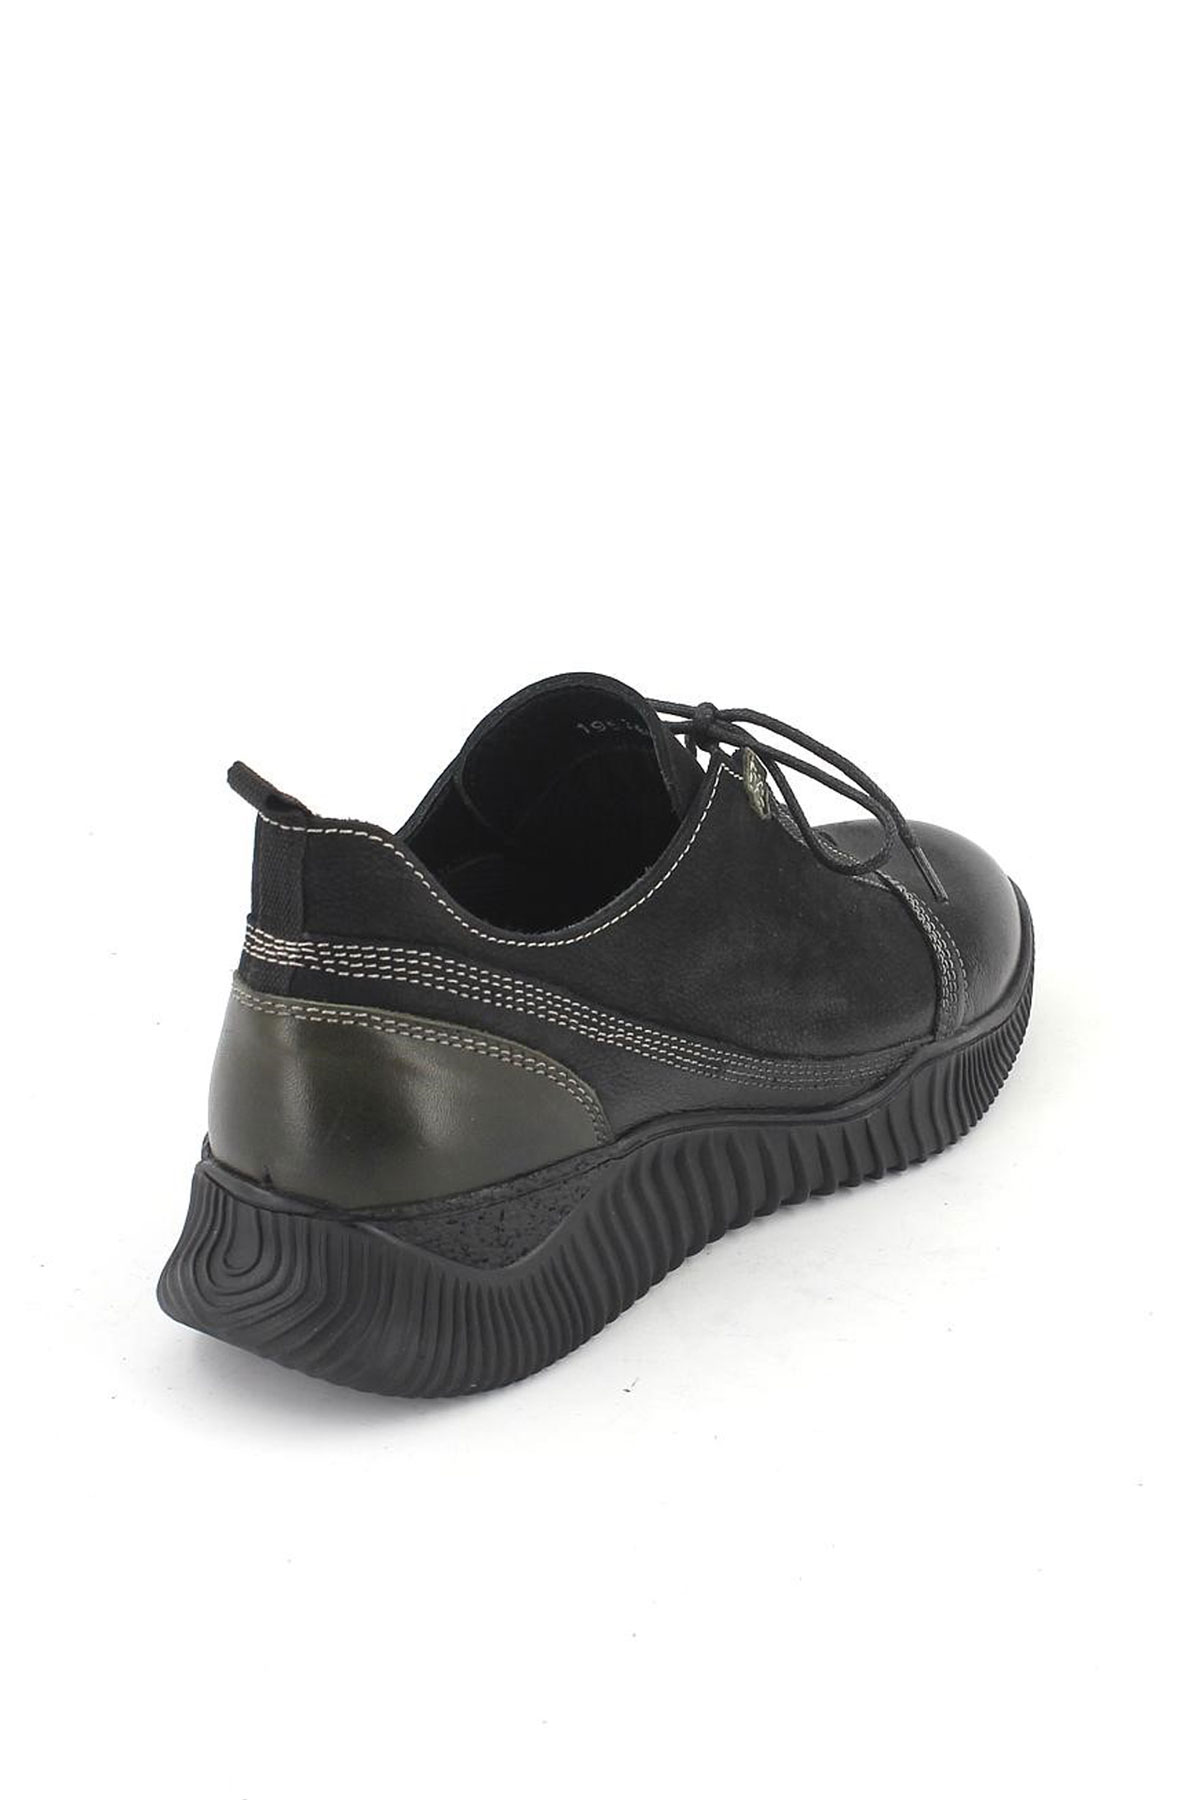 Kadın Comfort Deri Ayakkabı Siyah Yeşil 1953859K